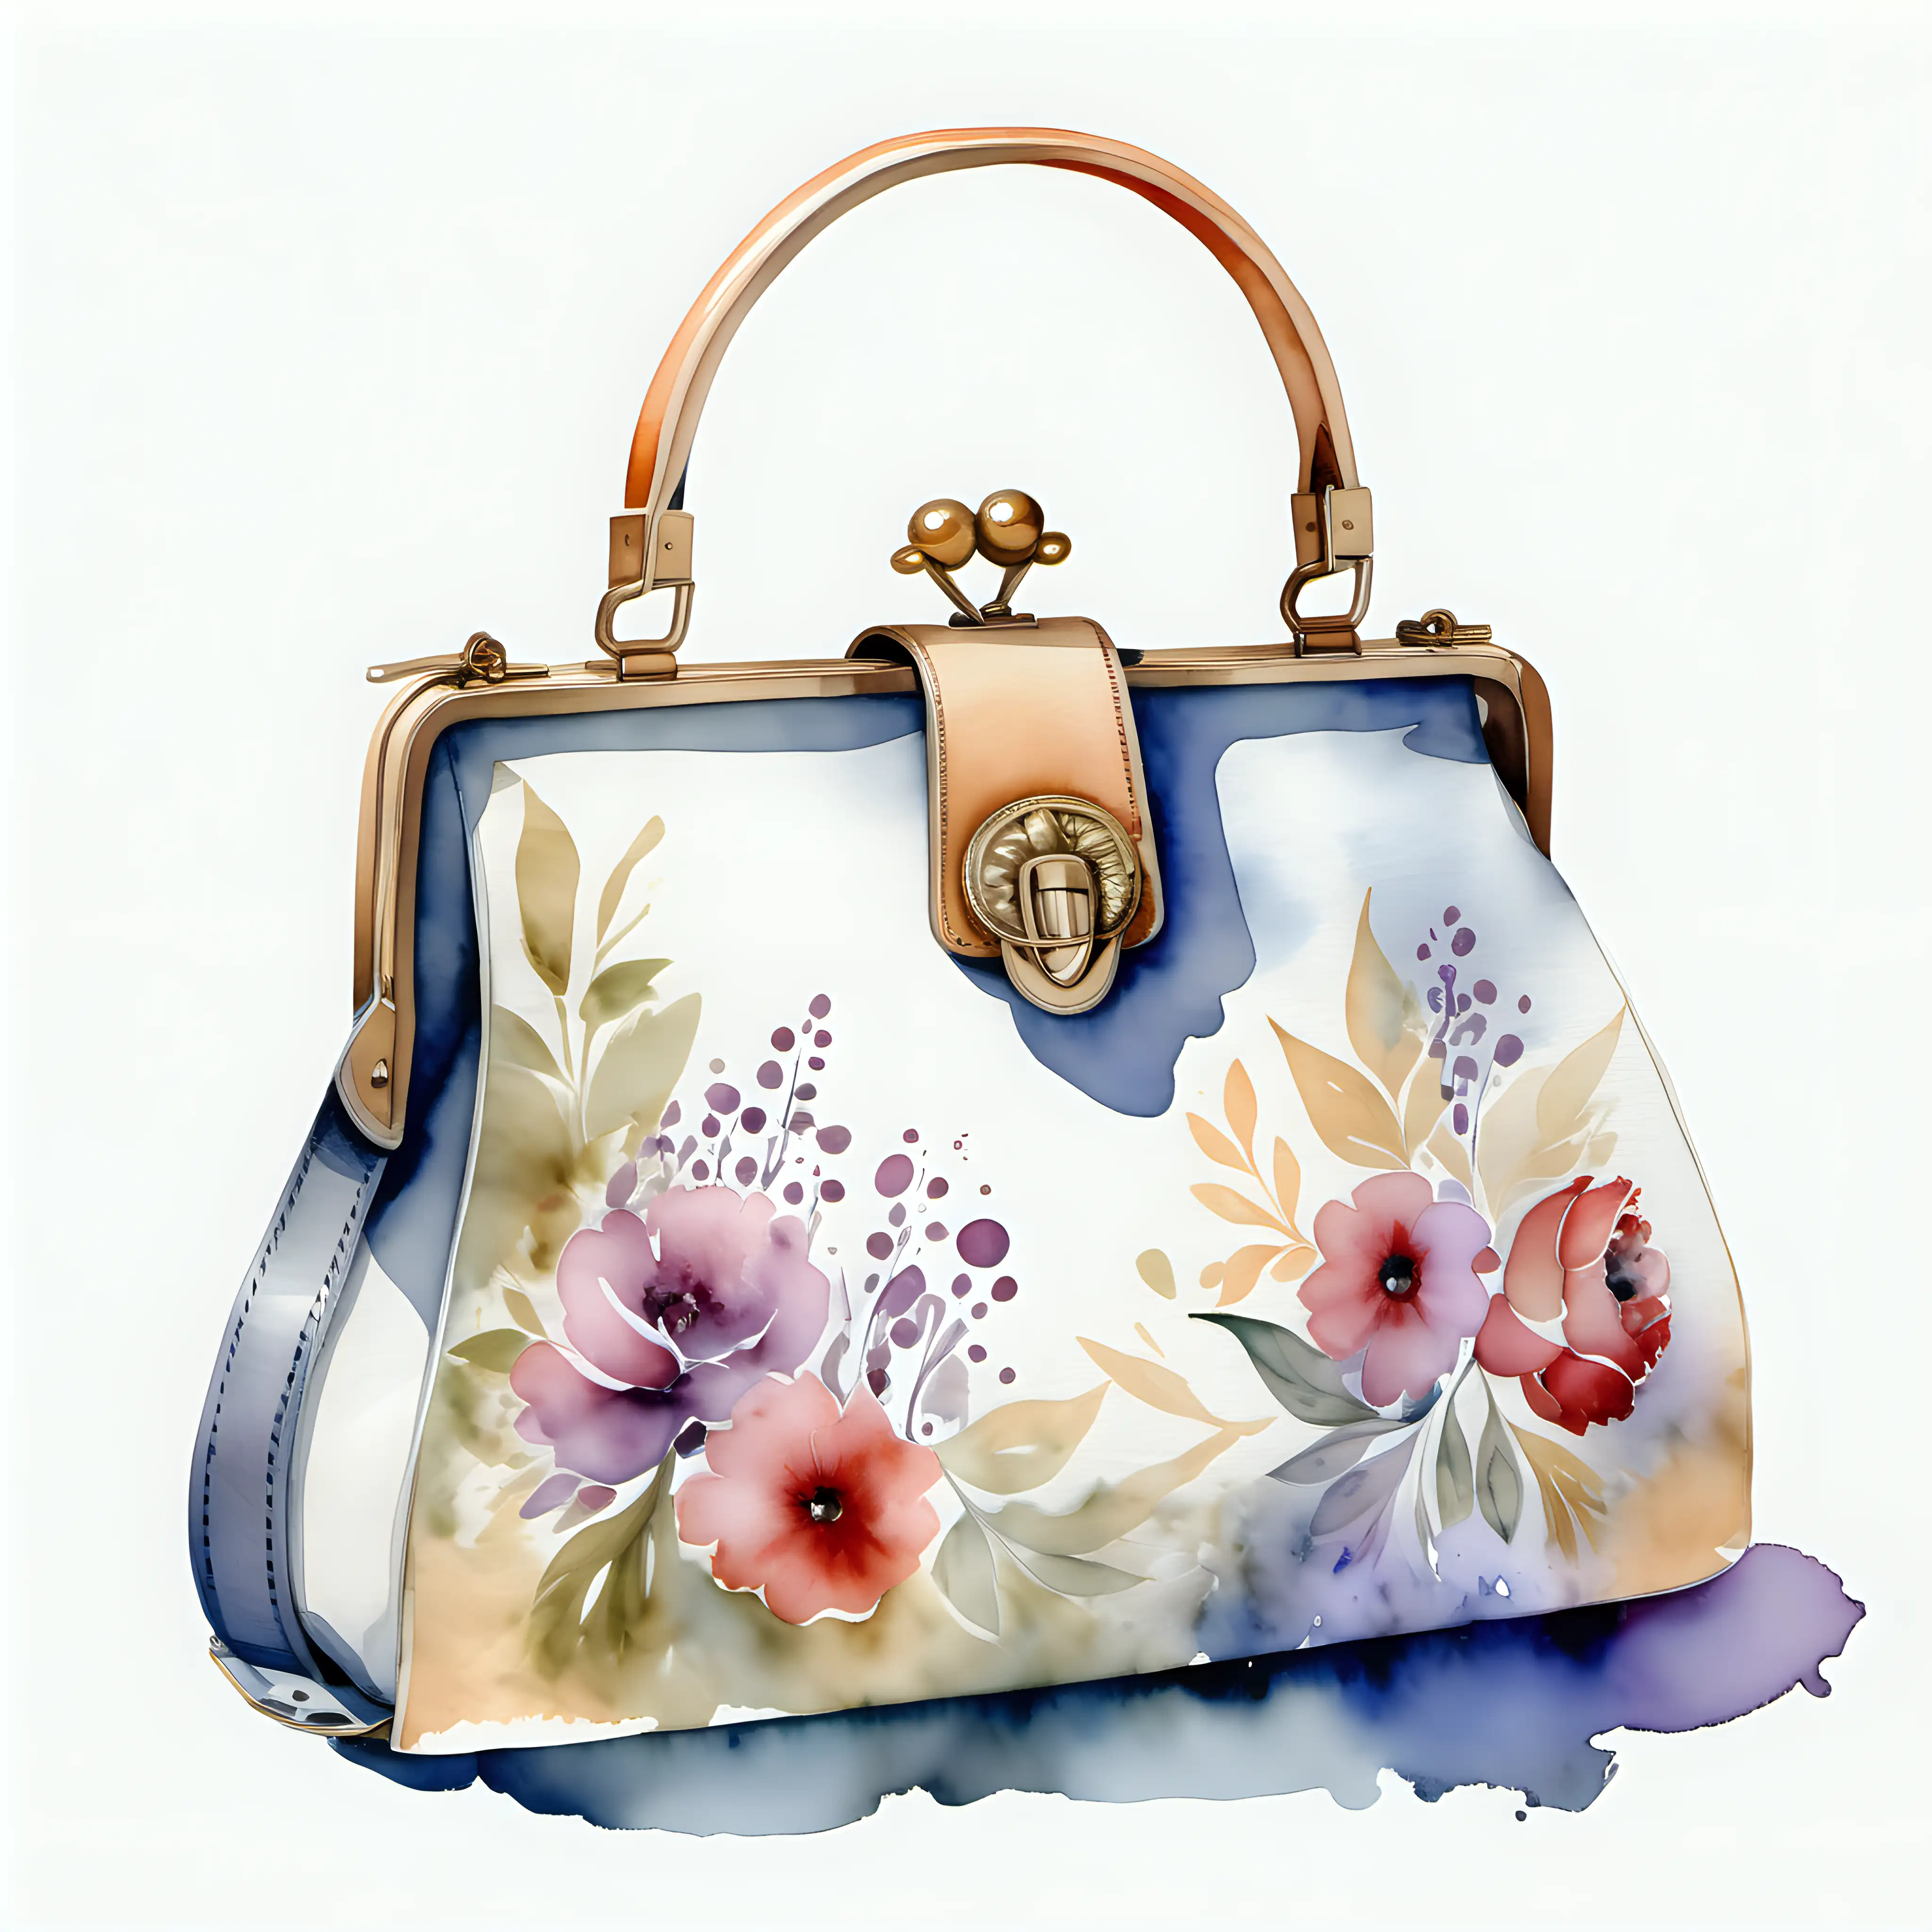 beautiful French handbag in watercolor